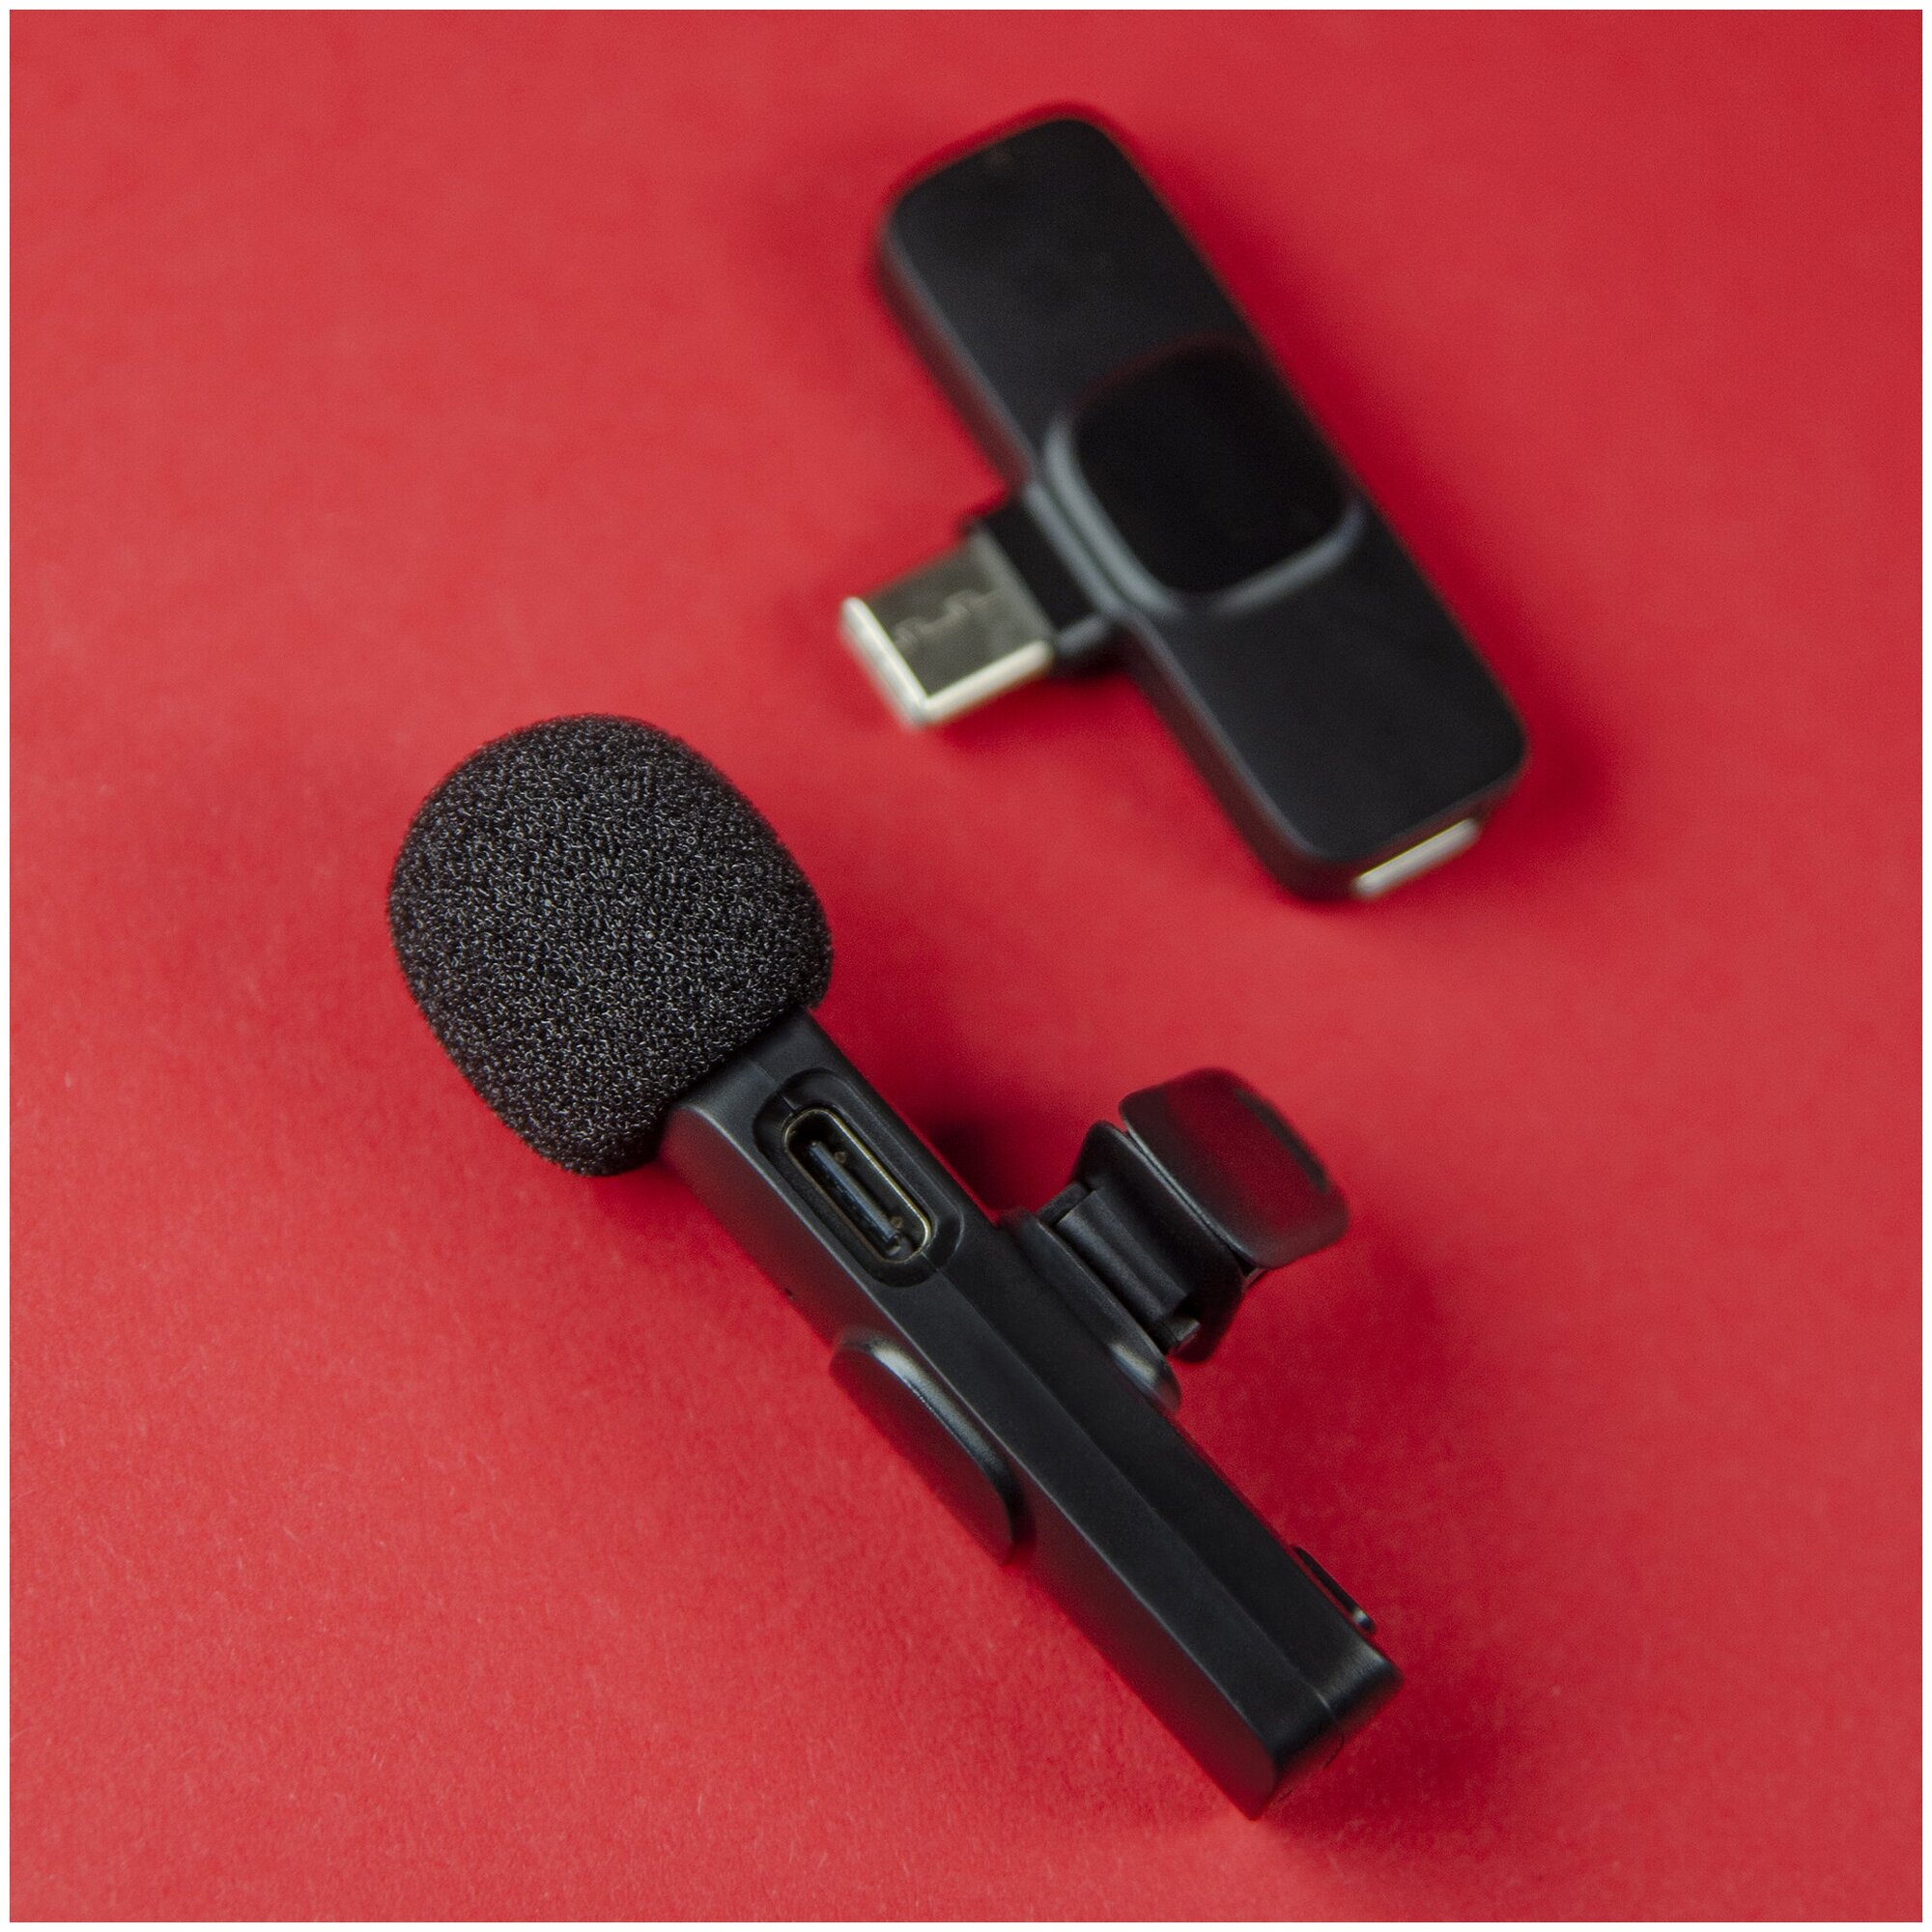 Микрофон петличный беспроводной для android WALKER WRM-51 пелтичка для телефона для записи видео блога стрима звука с разъемом type-c черный